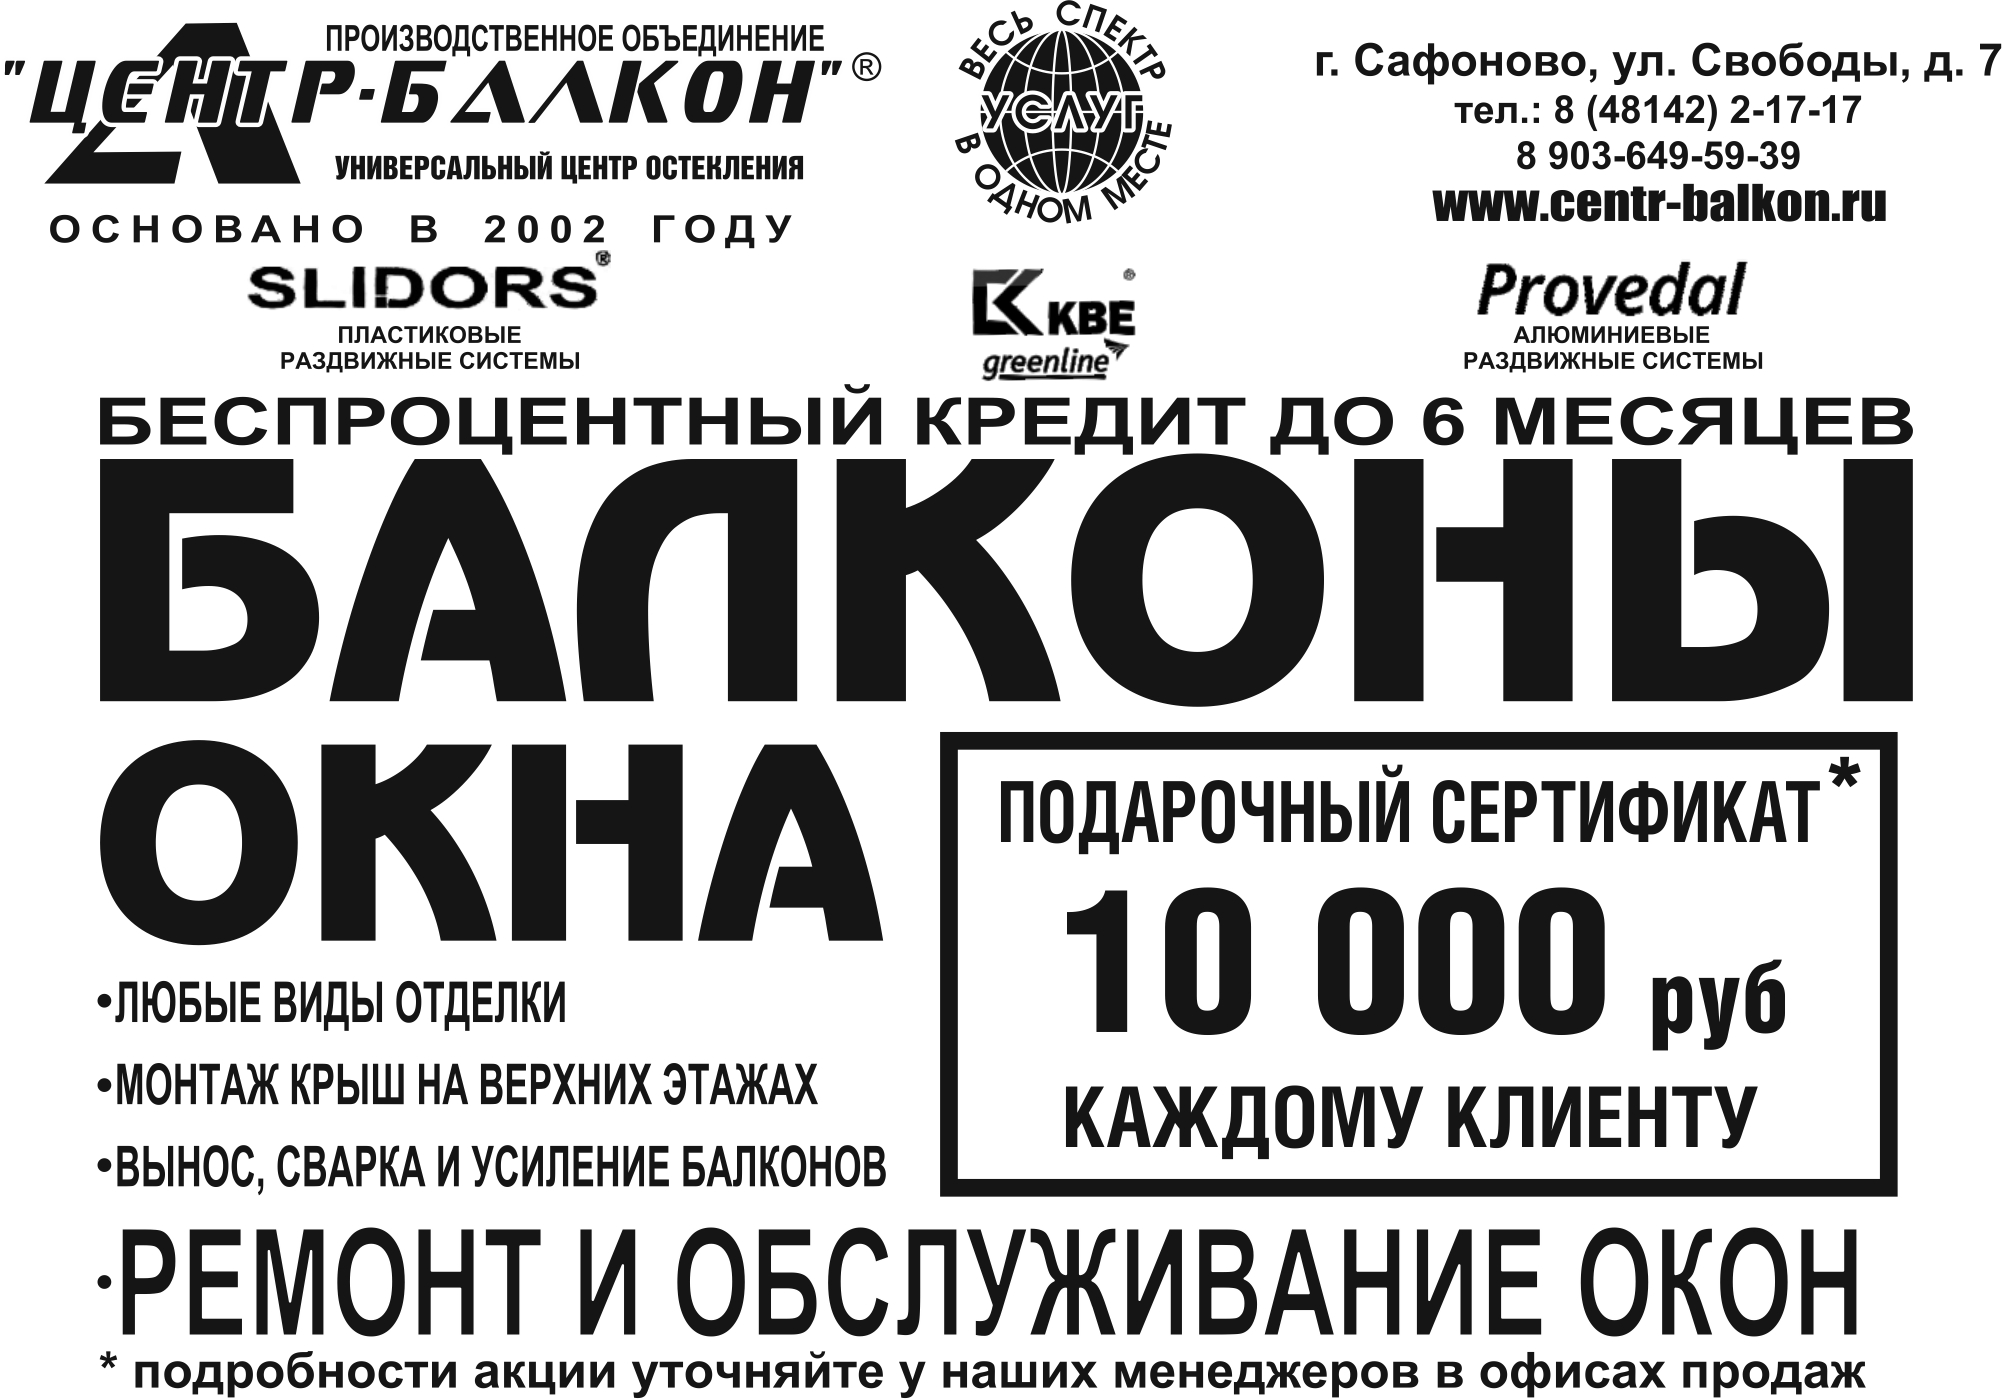 Подарочный сертификат на 10000 рублей каждому клиенту